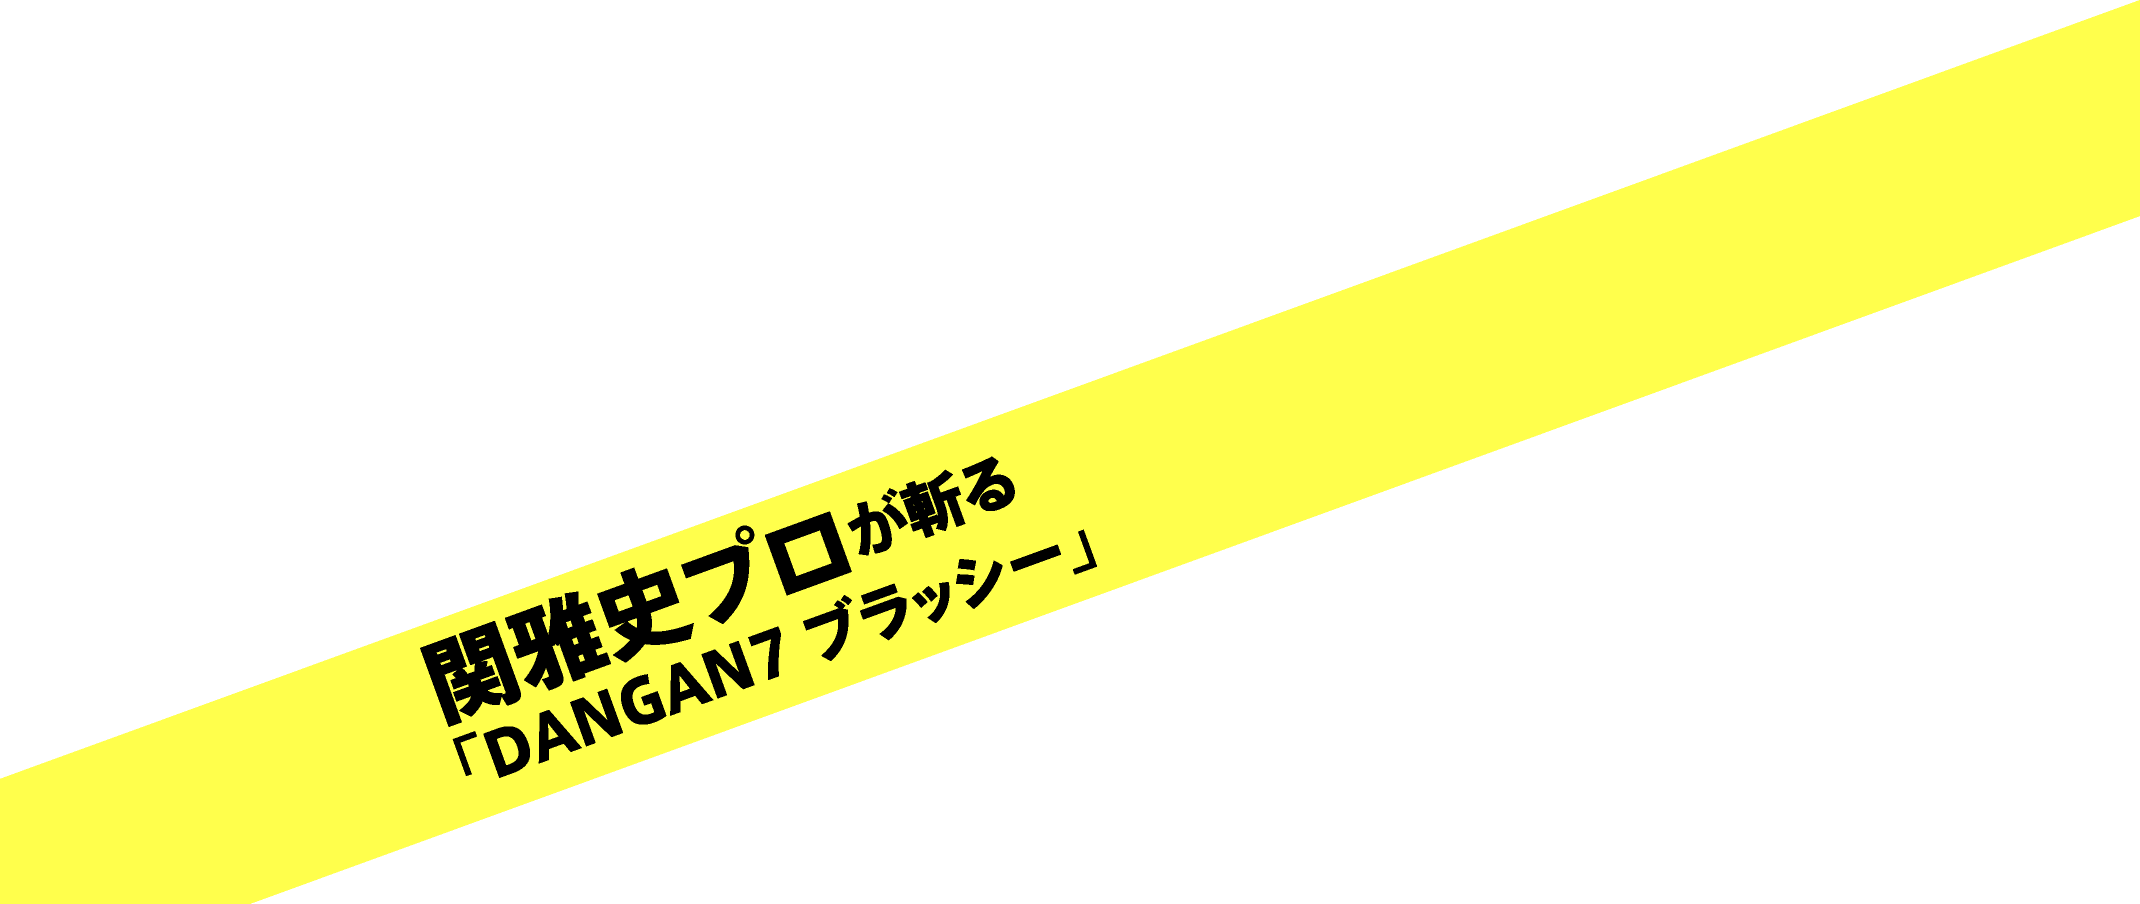 関雅史プロが斬る「DANGAN7 ブラッシー」